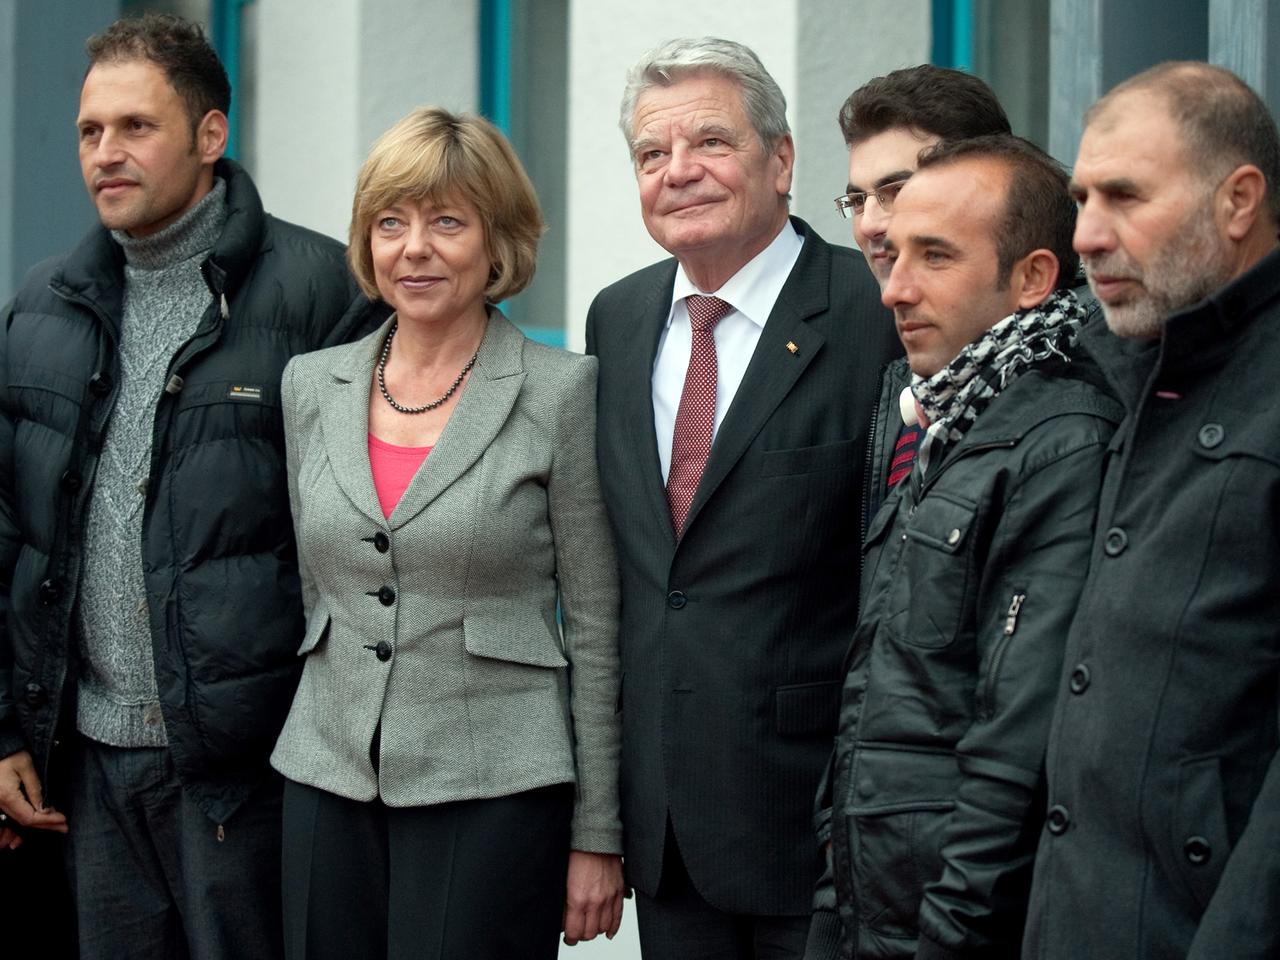 Bundespräsident Gauck besuchte die Flüchtlinge mit seiner Lebensgefährtin Daniela Schadt